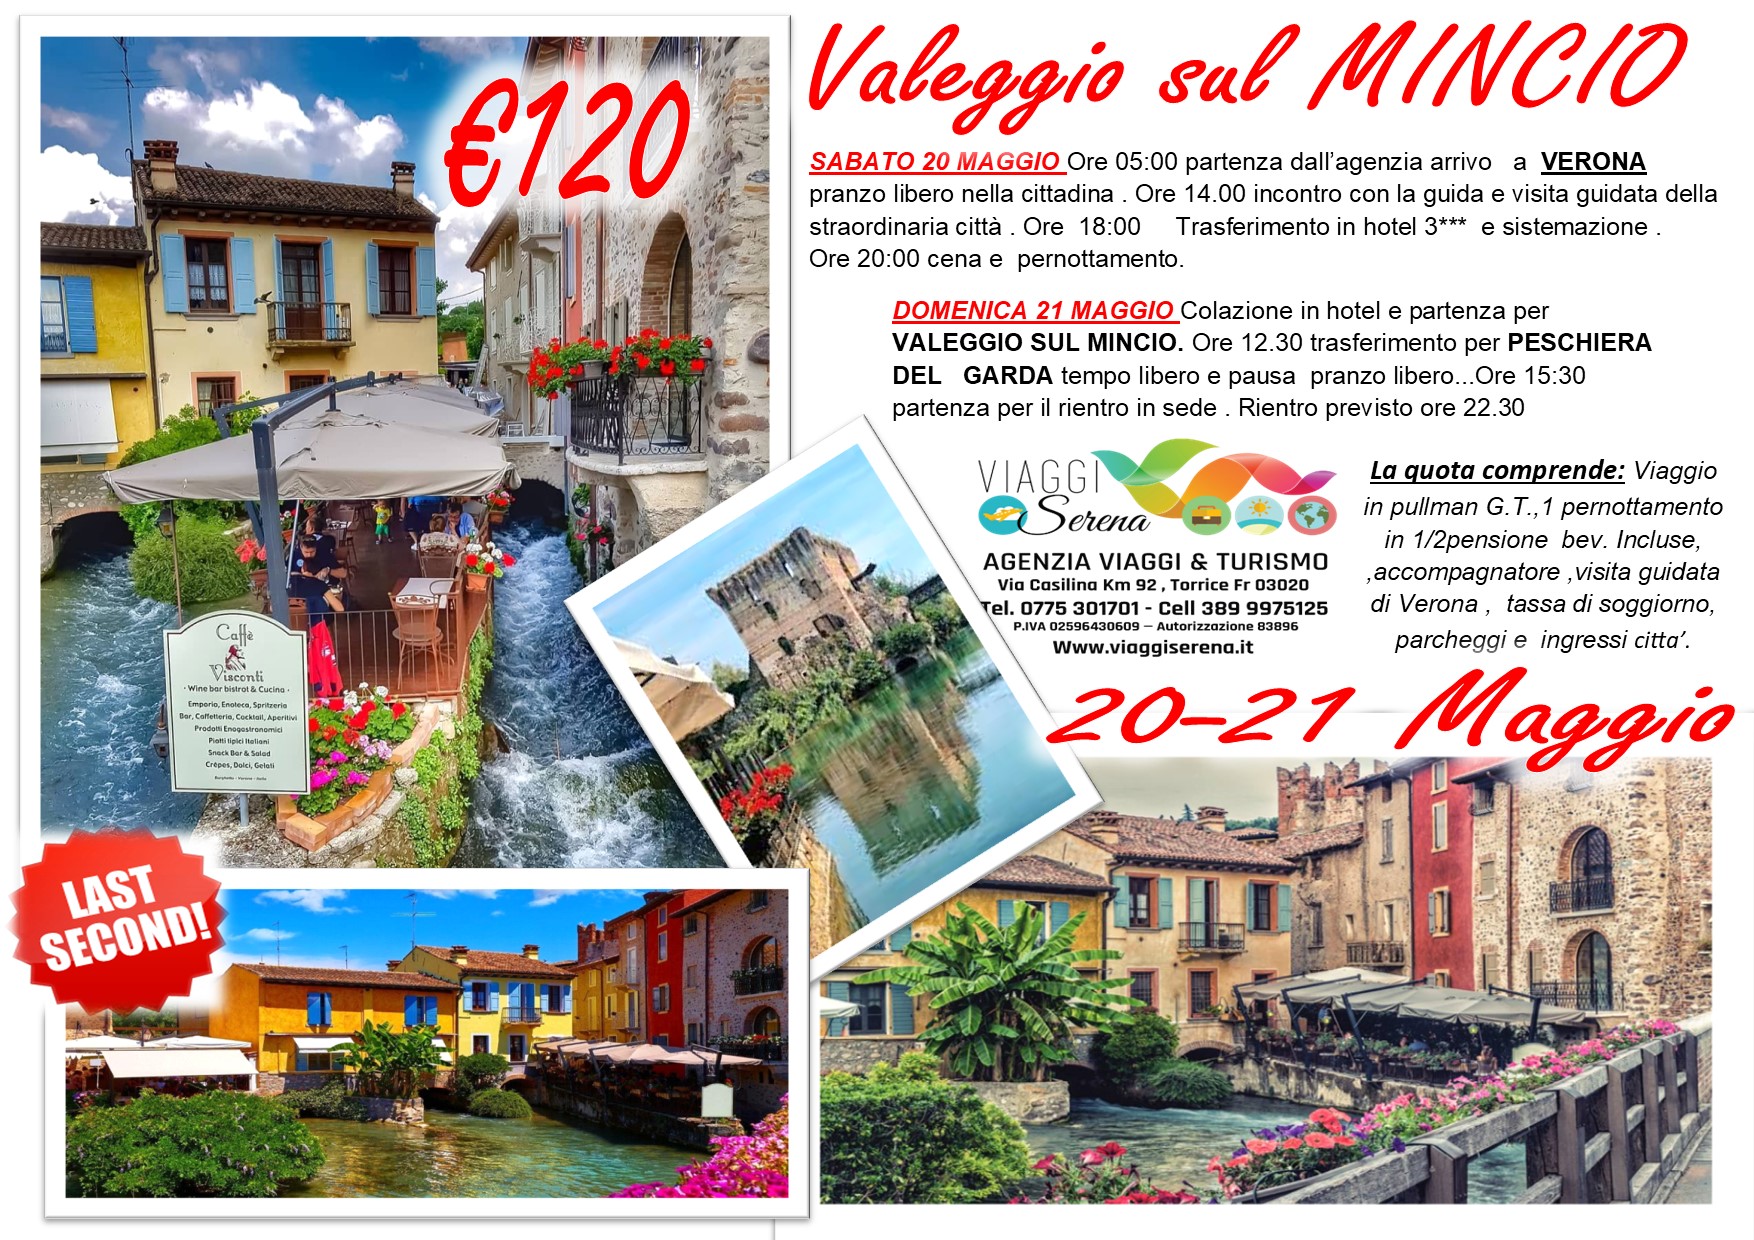 Viaggi di Gruppo: Verona, Peschiera del Garda e Valeggio sul Mincio 20-21 Maggio € 120,00